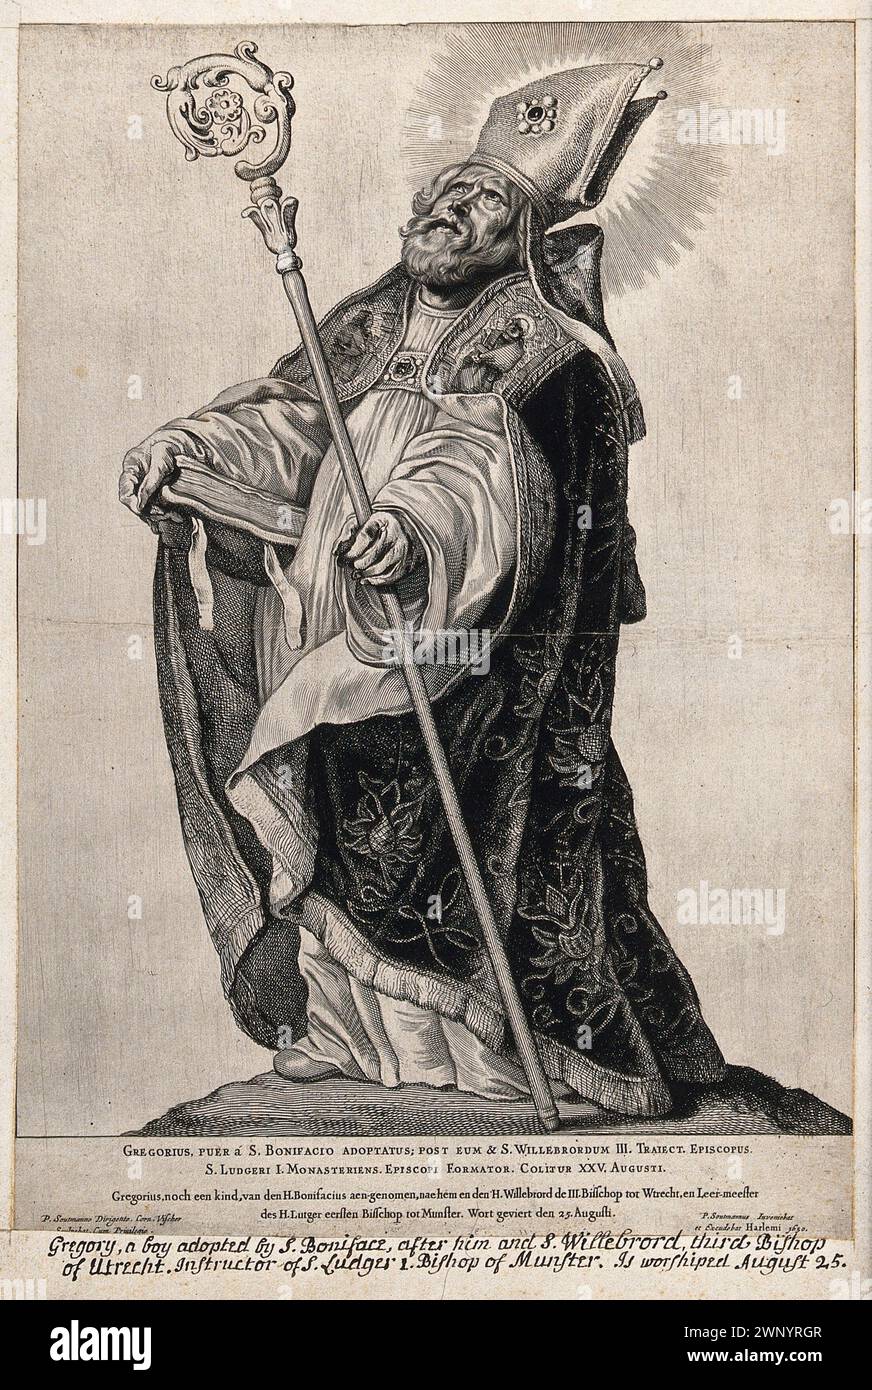 Ein Kupferstich von Papst Gregor I. (auch bekannt als Heiliger Gregor der große) aus dem Jahr 1650, der von 590 bis 604 n. Chr. Pontiff war. Er war der 64. Papst. Er war es, der den Gesang des Chors einführte, der als Gregorianischer Chant bekannt ist. Stockfoto